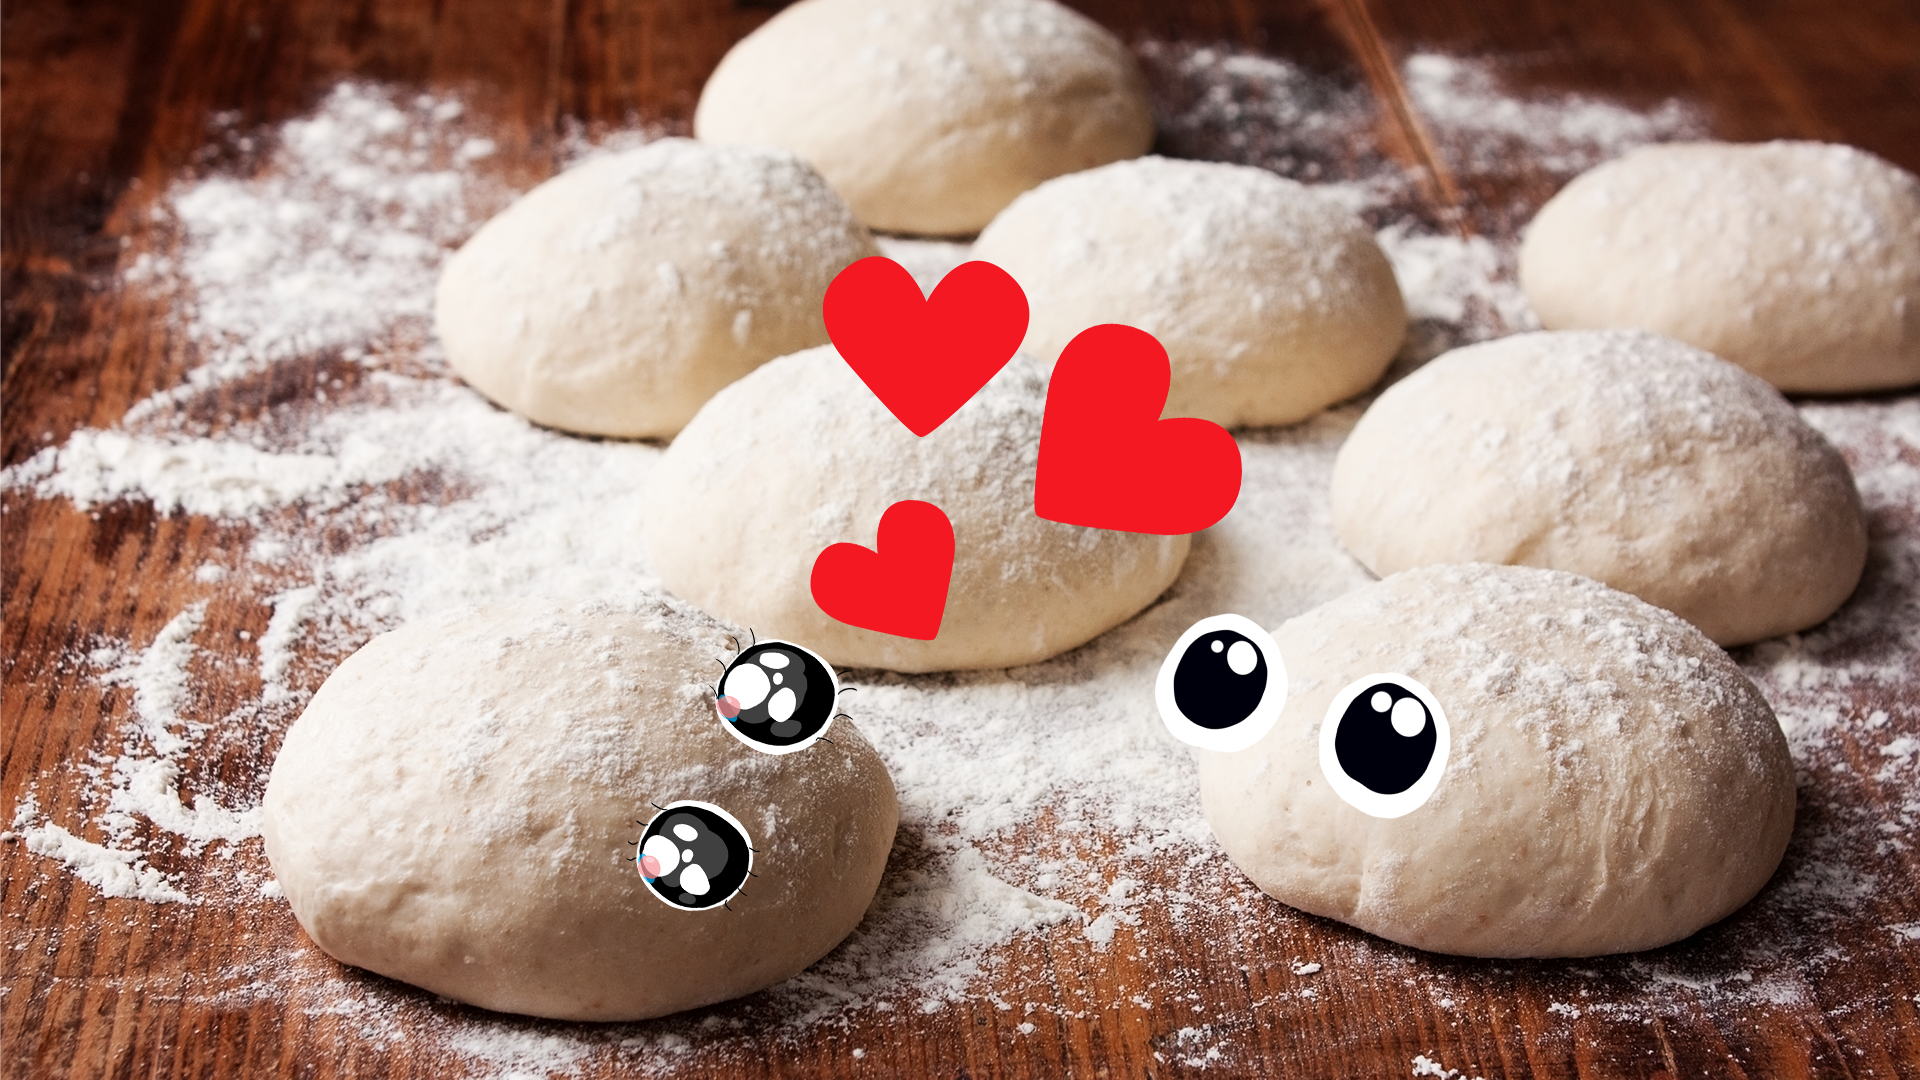 A some balls of dough